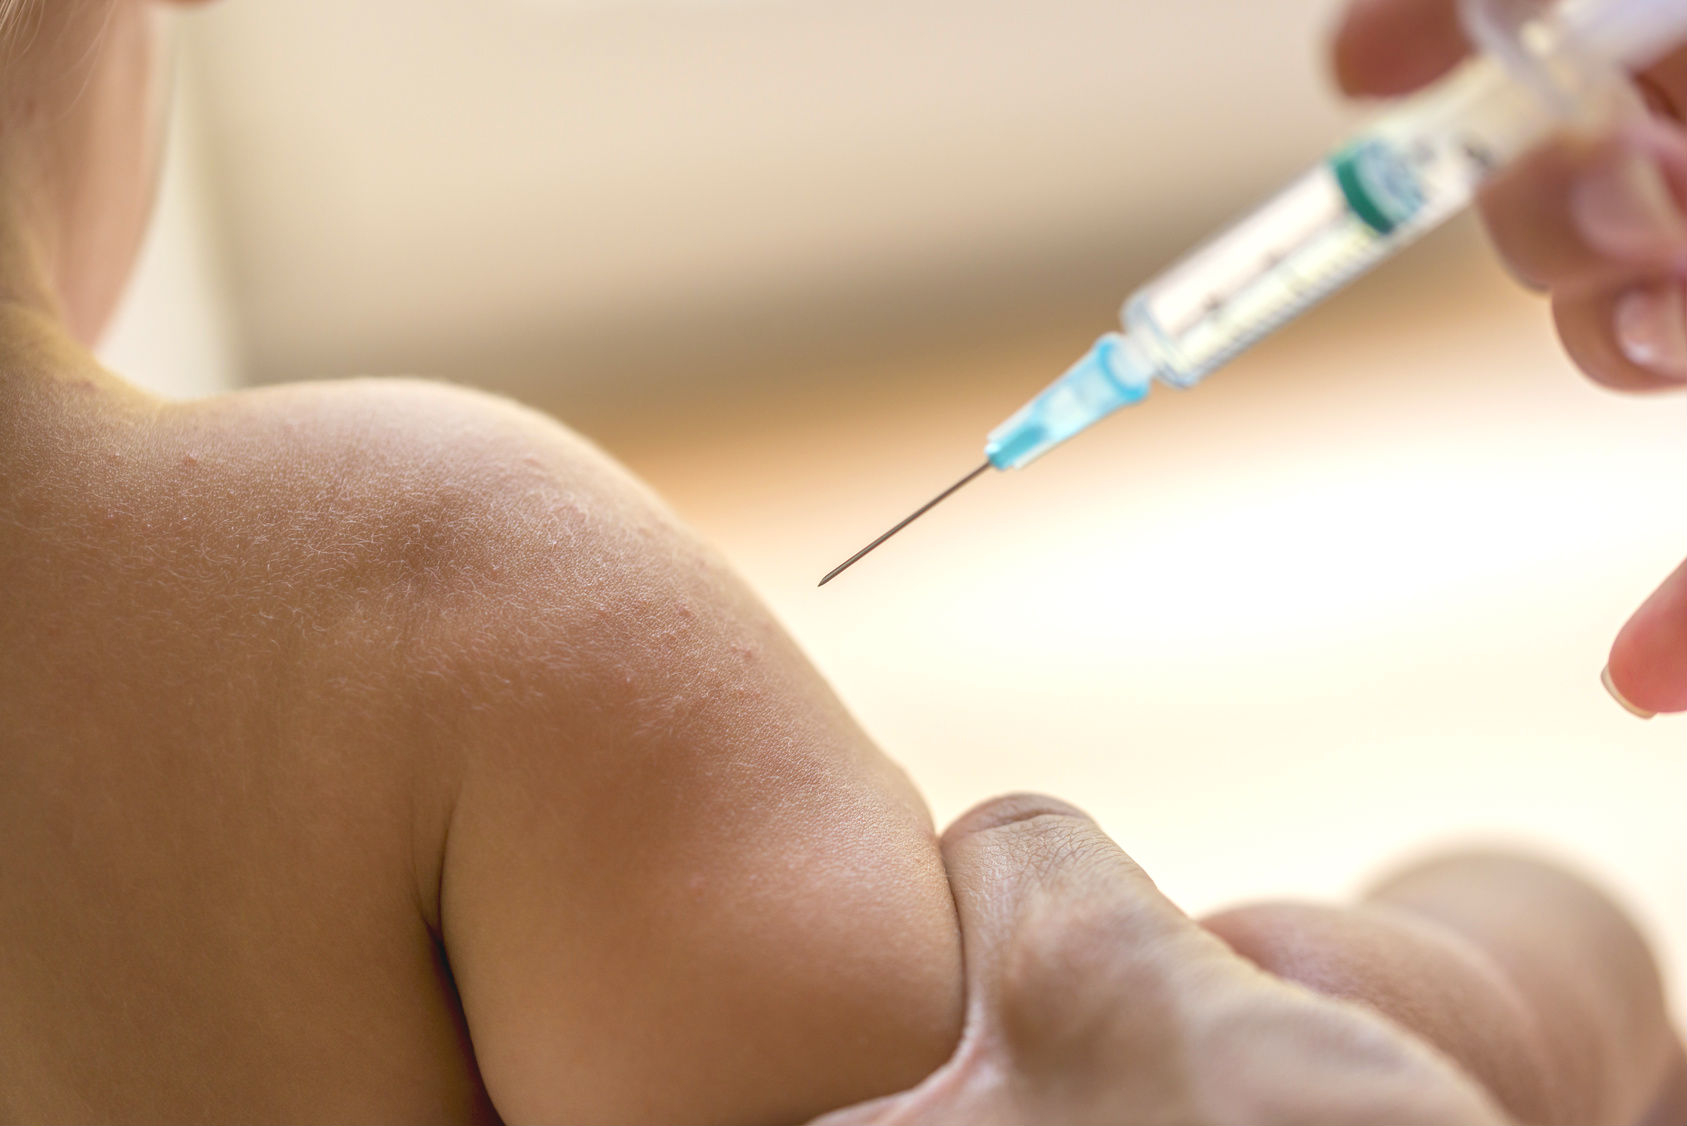 Kitas müssen Eltern bei fehlender Impfberatung künftig zwingend melden – Bußgelder bis zu 2500 Euro